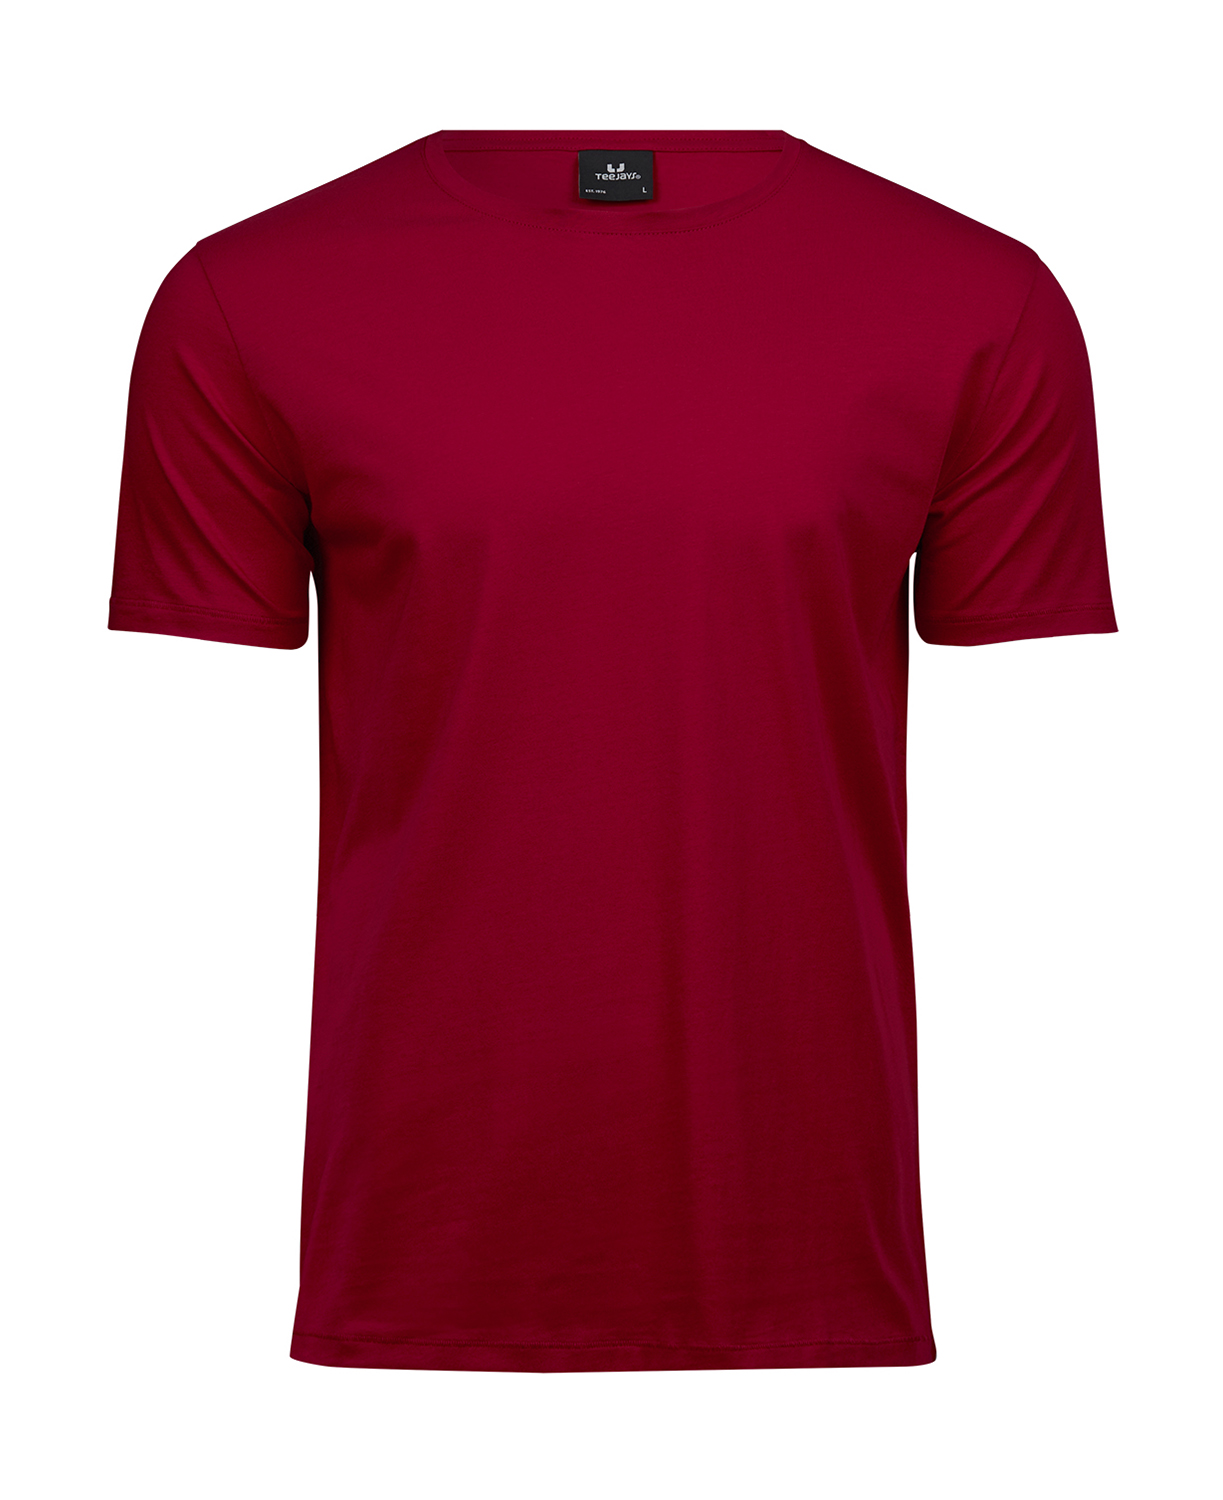 Pánské tričko Luxury Tee Velikost: M, Barva: Červená